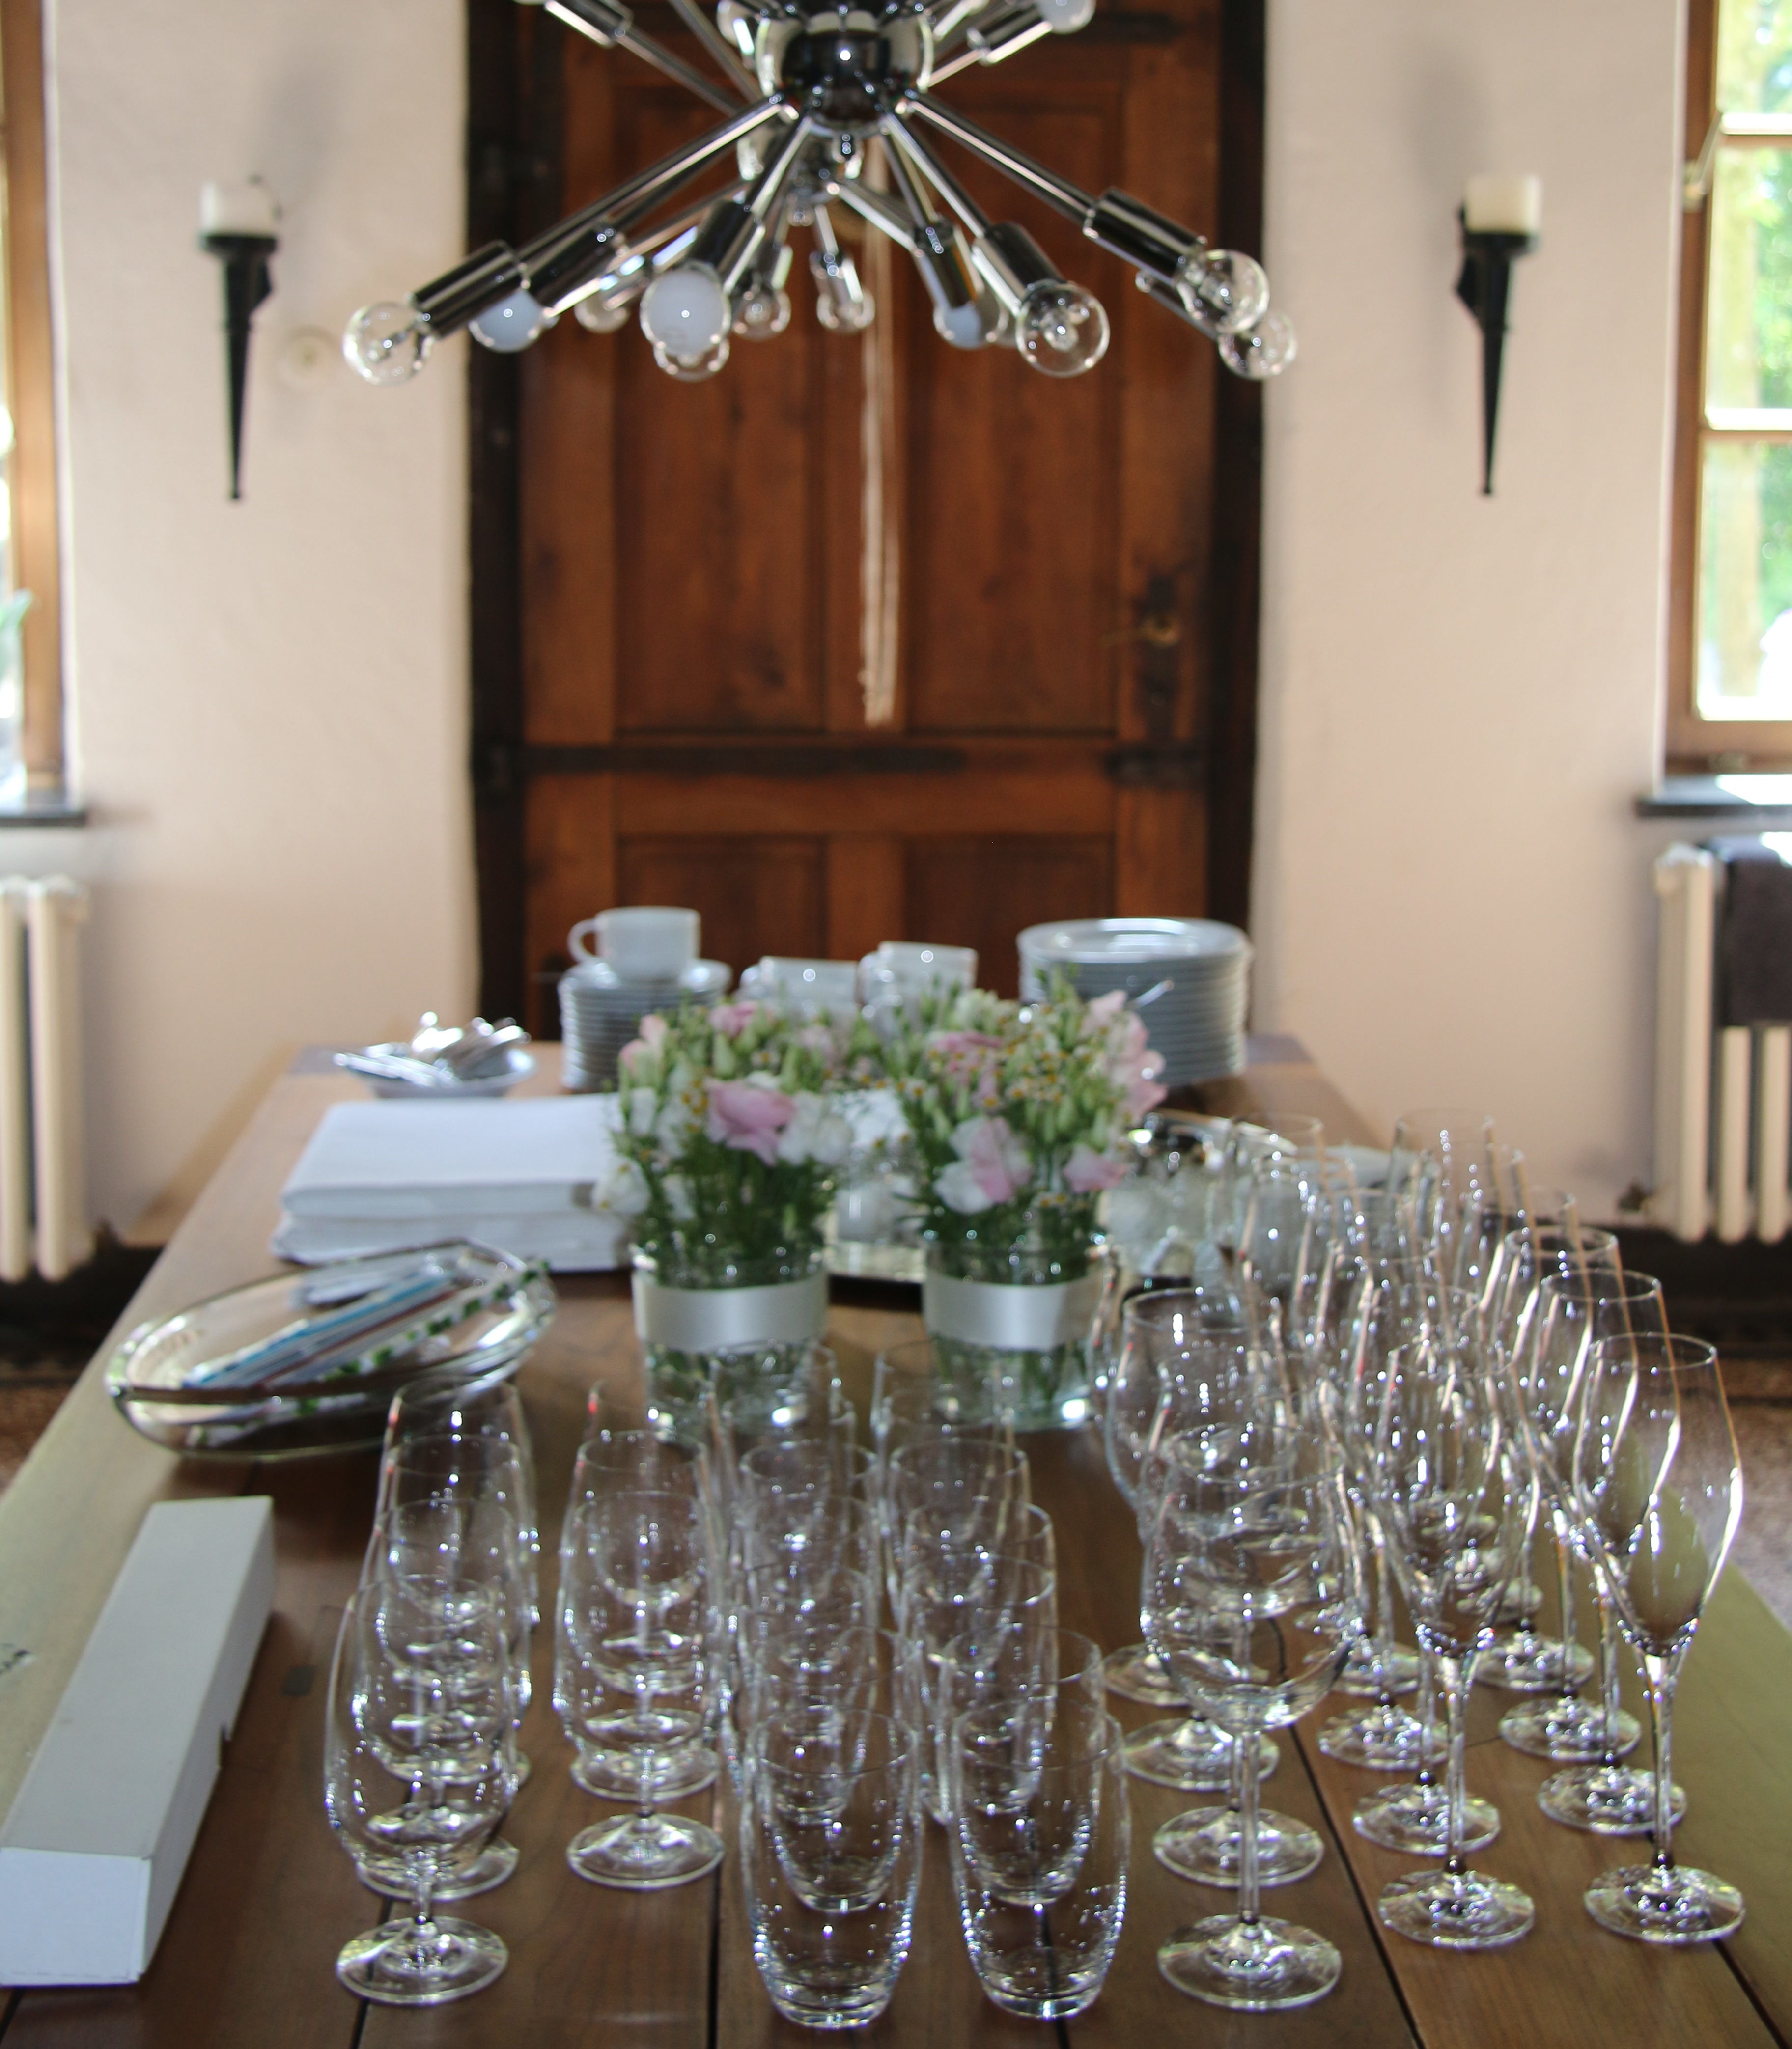 Tisch mit Gläsern zur Kommunion bereitgestellt